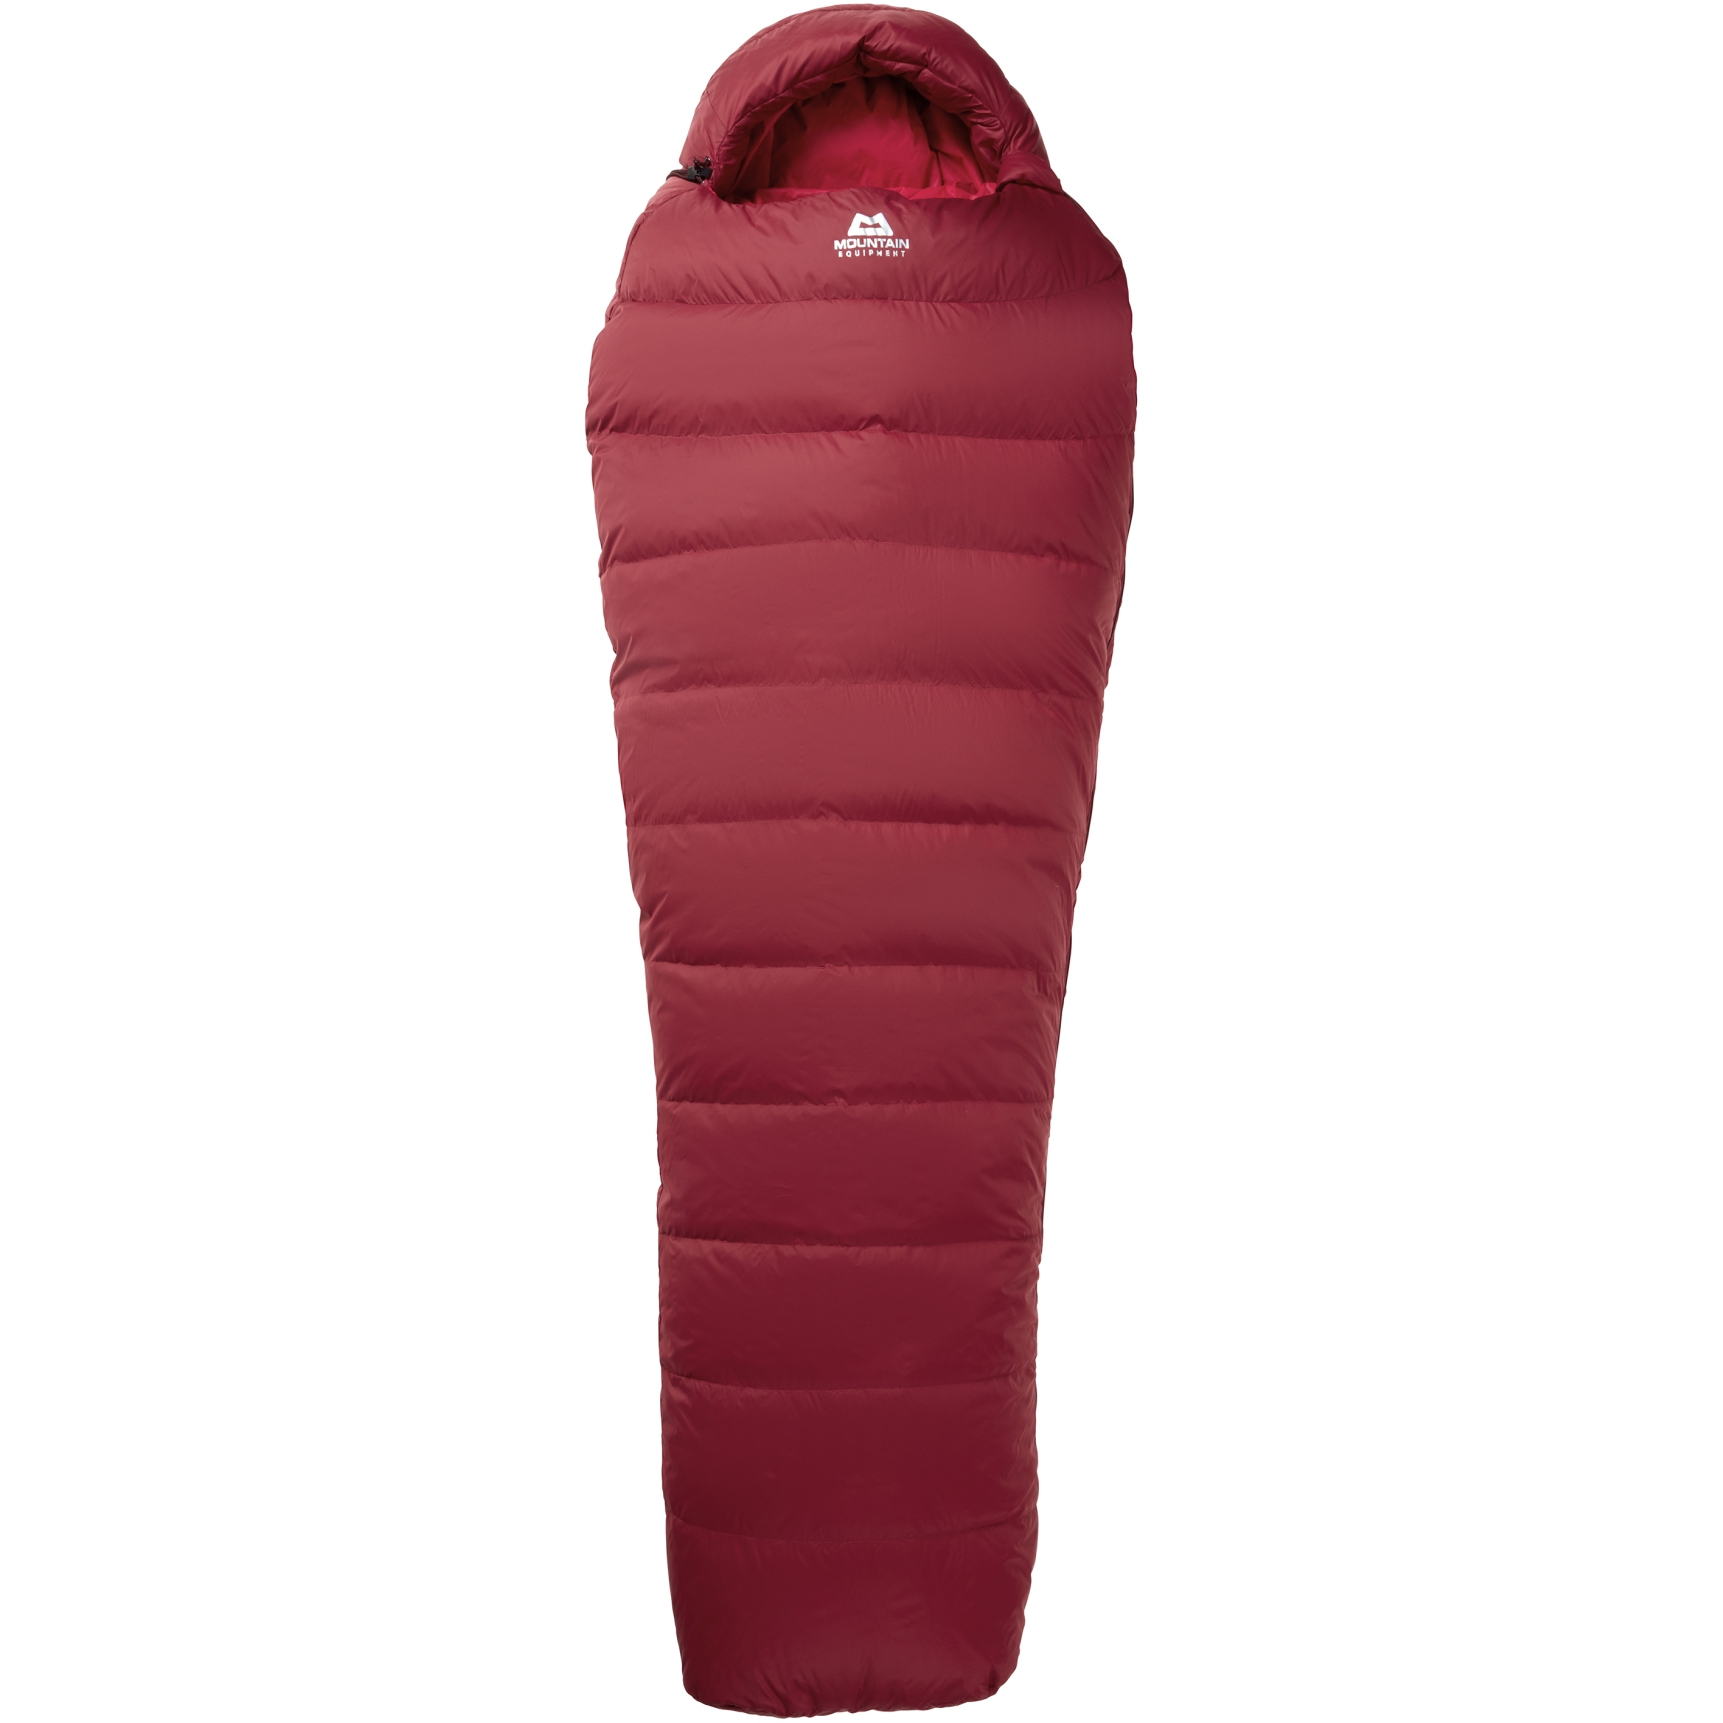 Produktbild von Mountain Equipment Olympus 450 Regular Damen Schlafsack ME-006082 - RV links - rhubarb